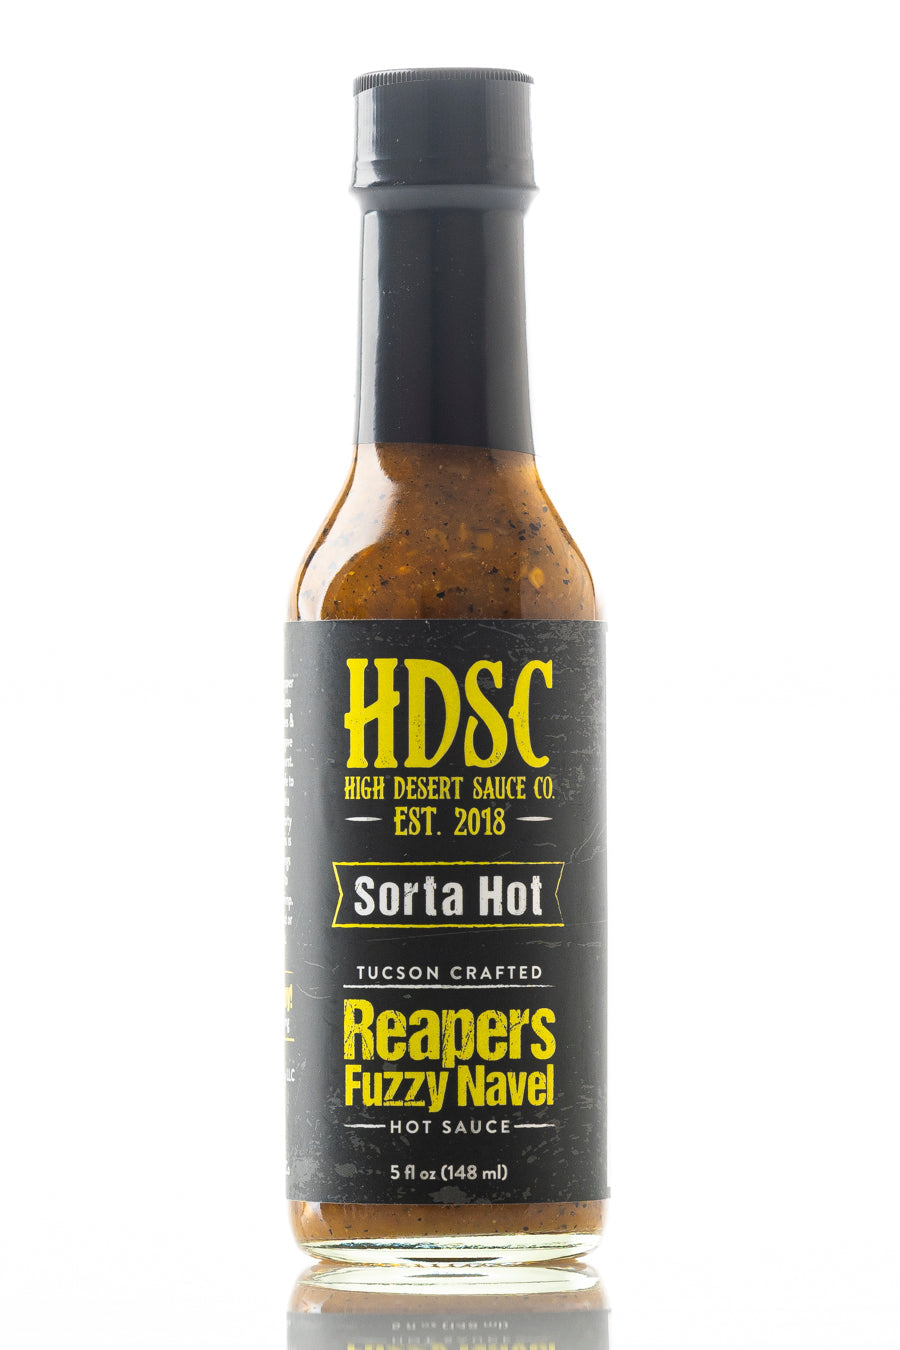 High Desert Sauce Co - Reaper's Fuzzy Navel